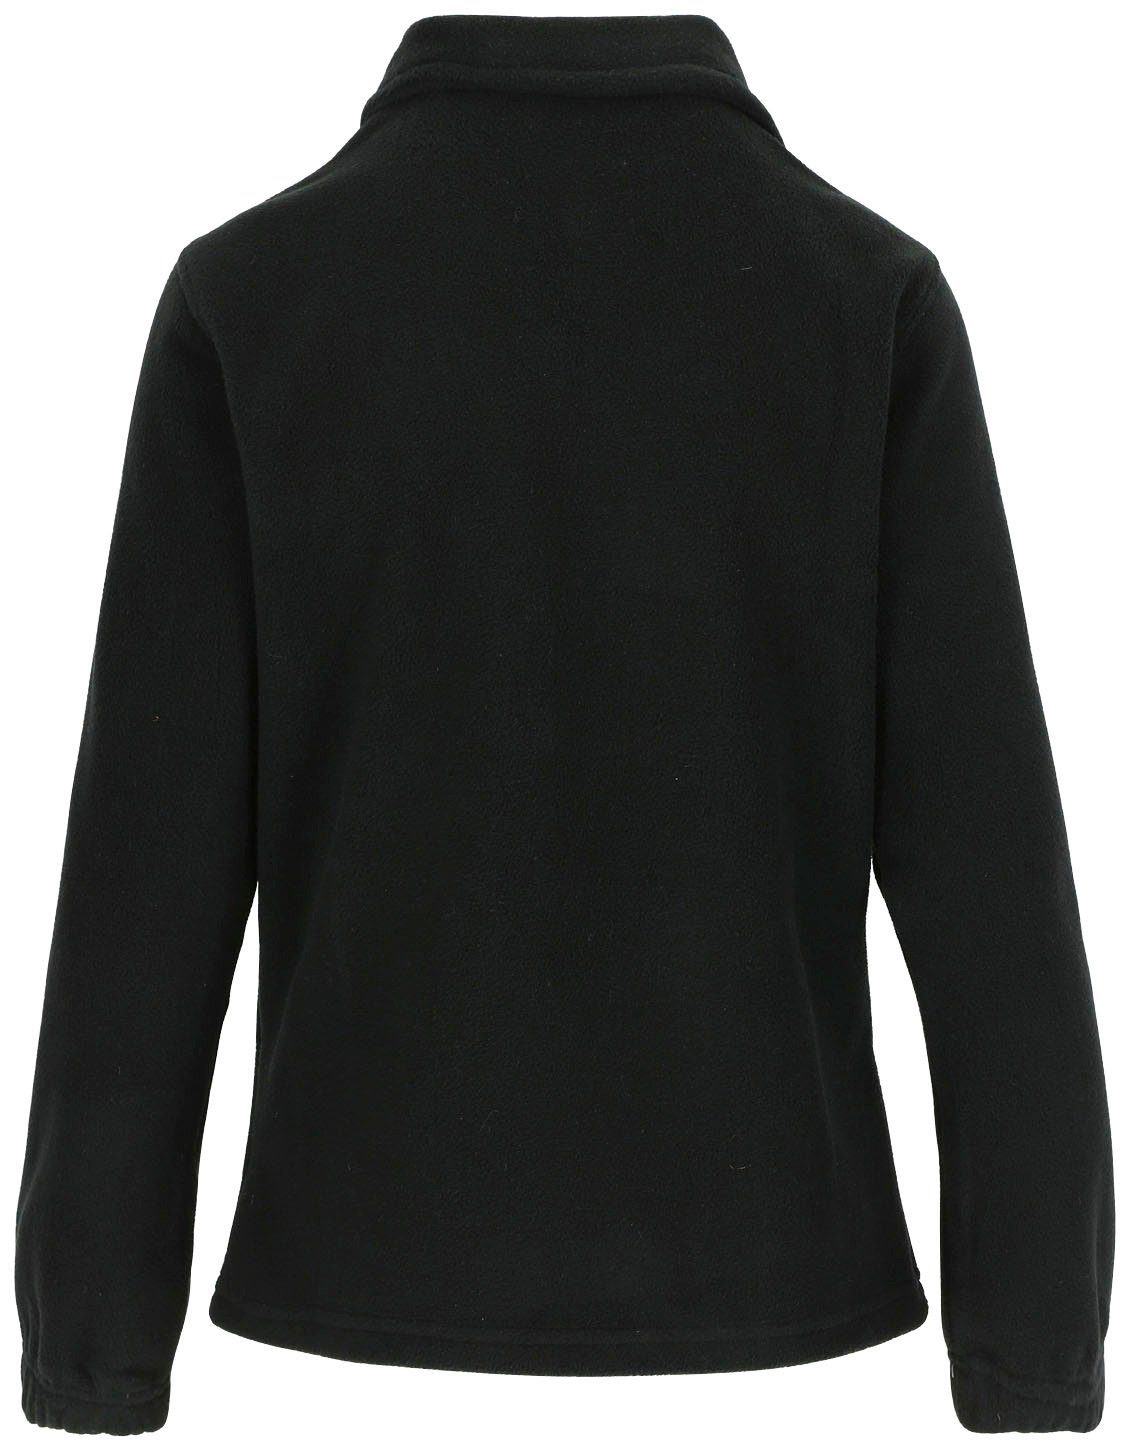 Deva angenehm Damen Seitentaschen, warm, Reißverschluss, Herock und Fleece langem leicht 2 Jacke Fleecejacke Mit schwarz